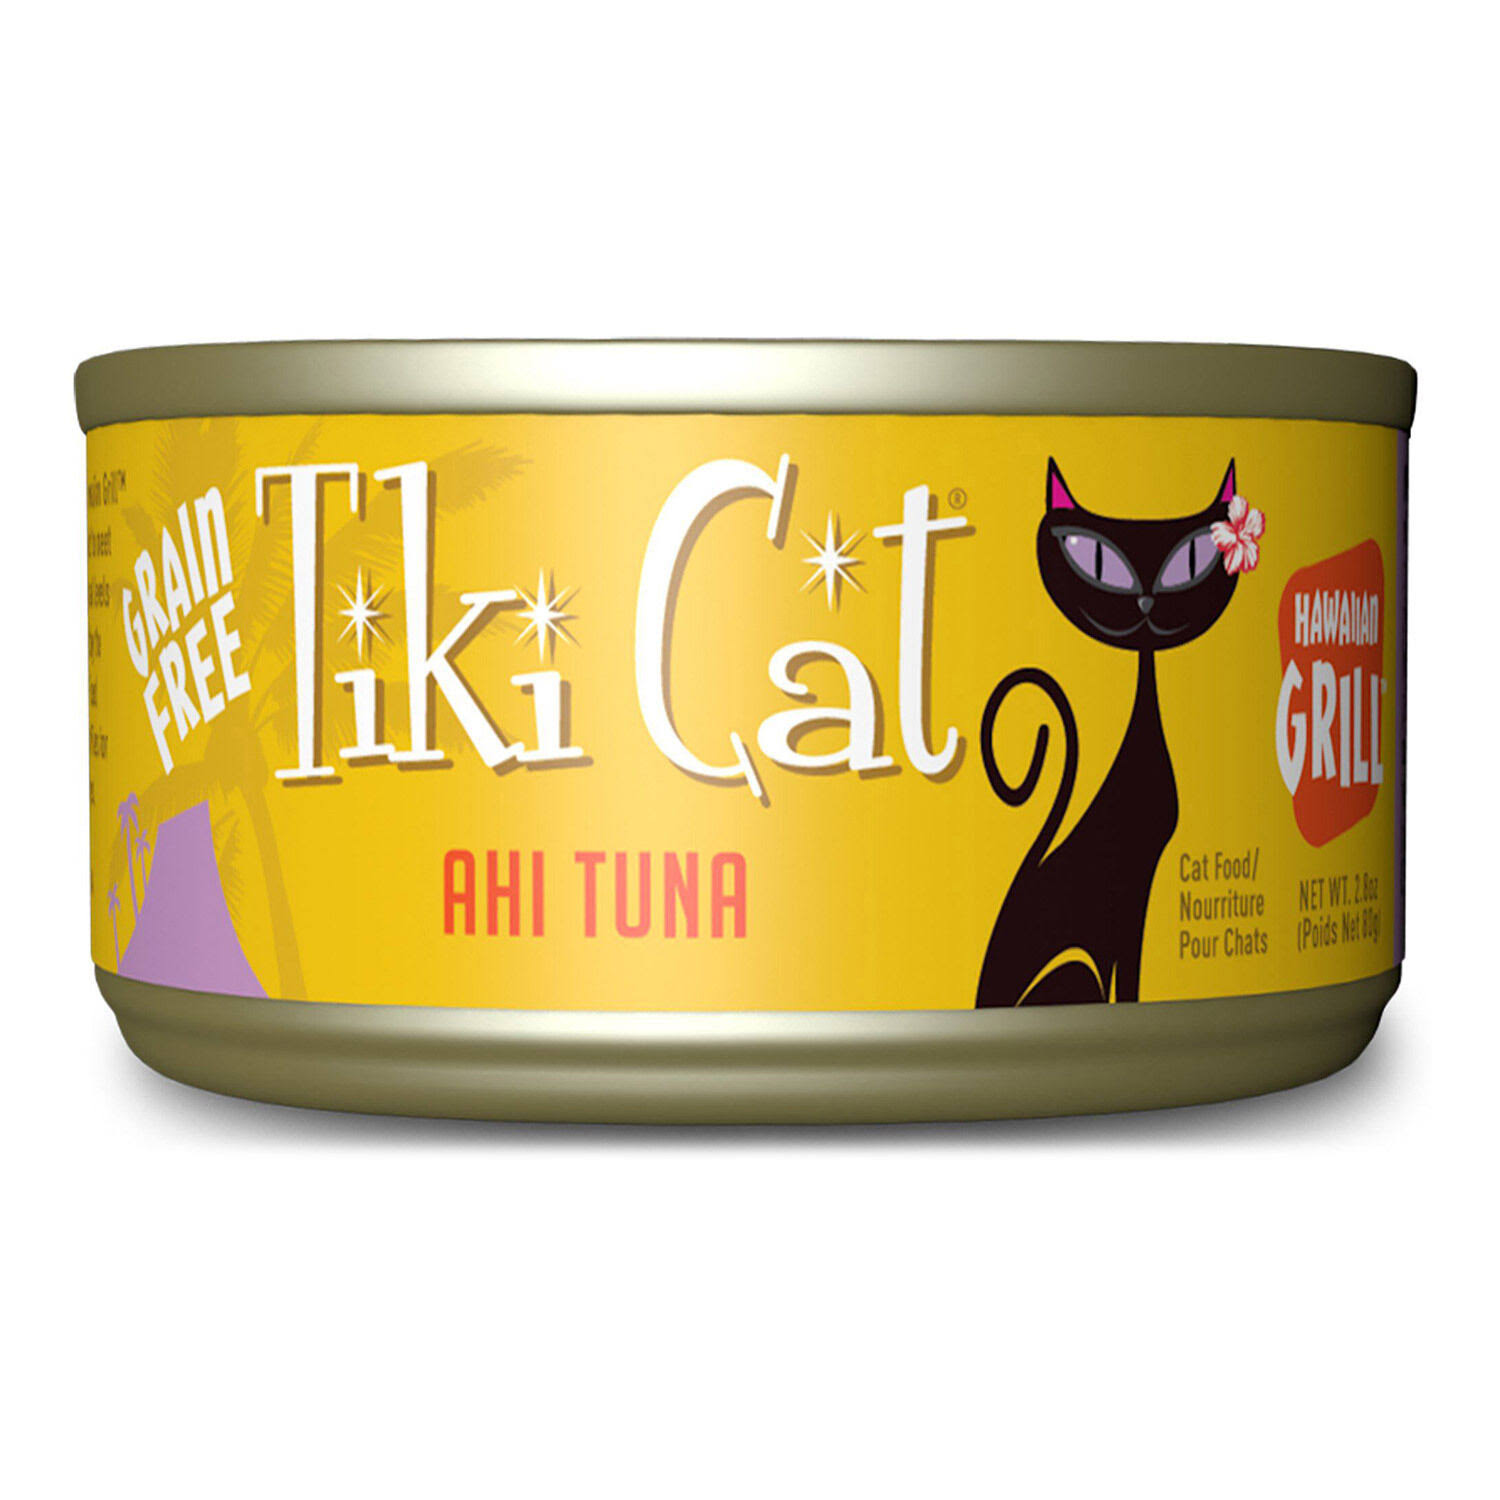 Tiki Cat Hawaiian Grill Ahi Tuna 2.8Oz